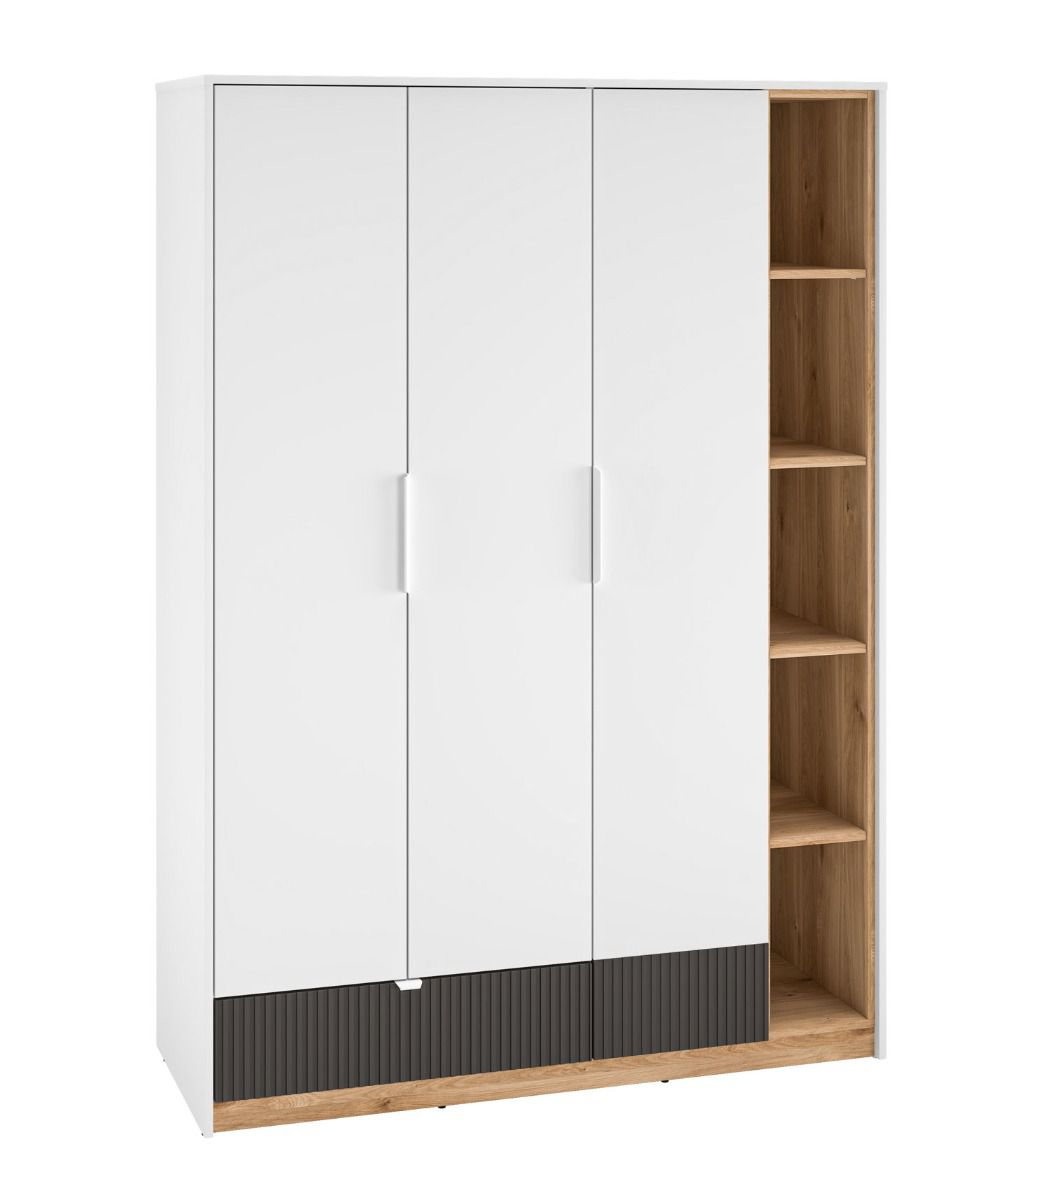 Kleiderschrank mit drei Türen Mackinac 01, Farbe: Weiß / Eiche / Grafit matt, Soft-Close-System, ABS-Kantenschutz, Maße: 196 x 138 x 53 cm, mit einer Schublade und 11 Fächer